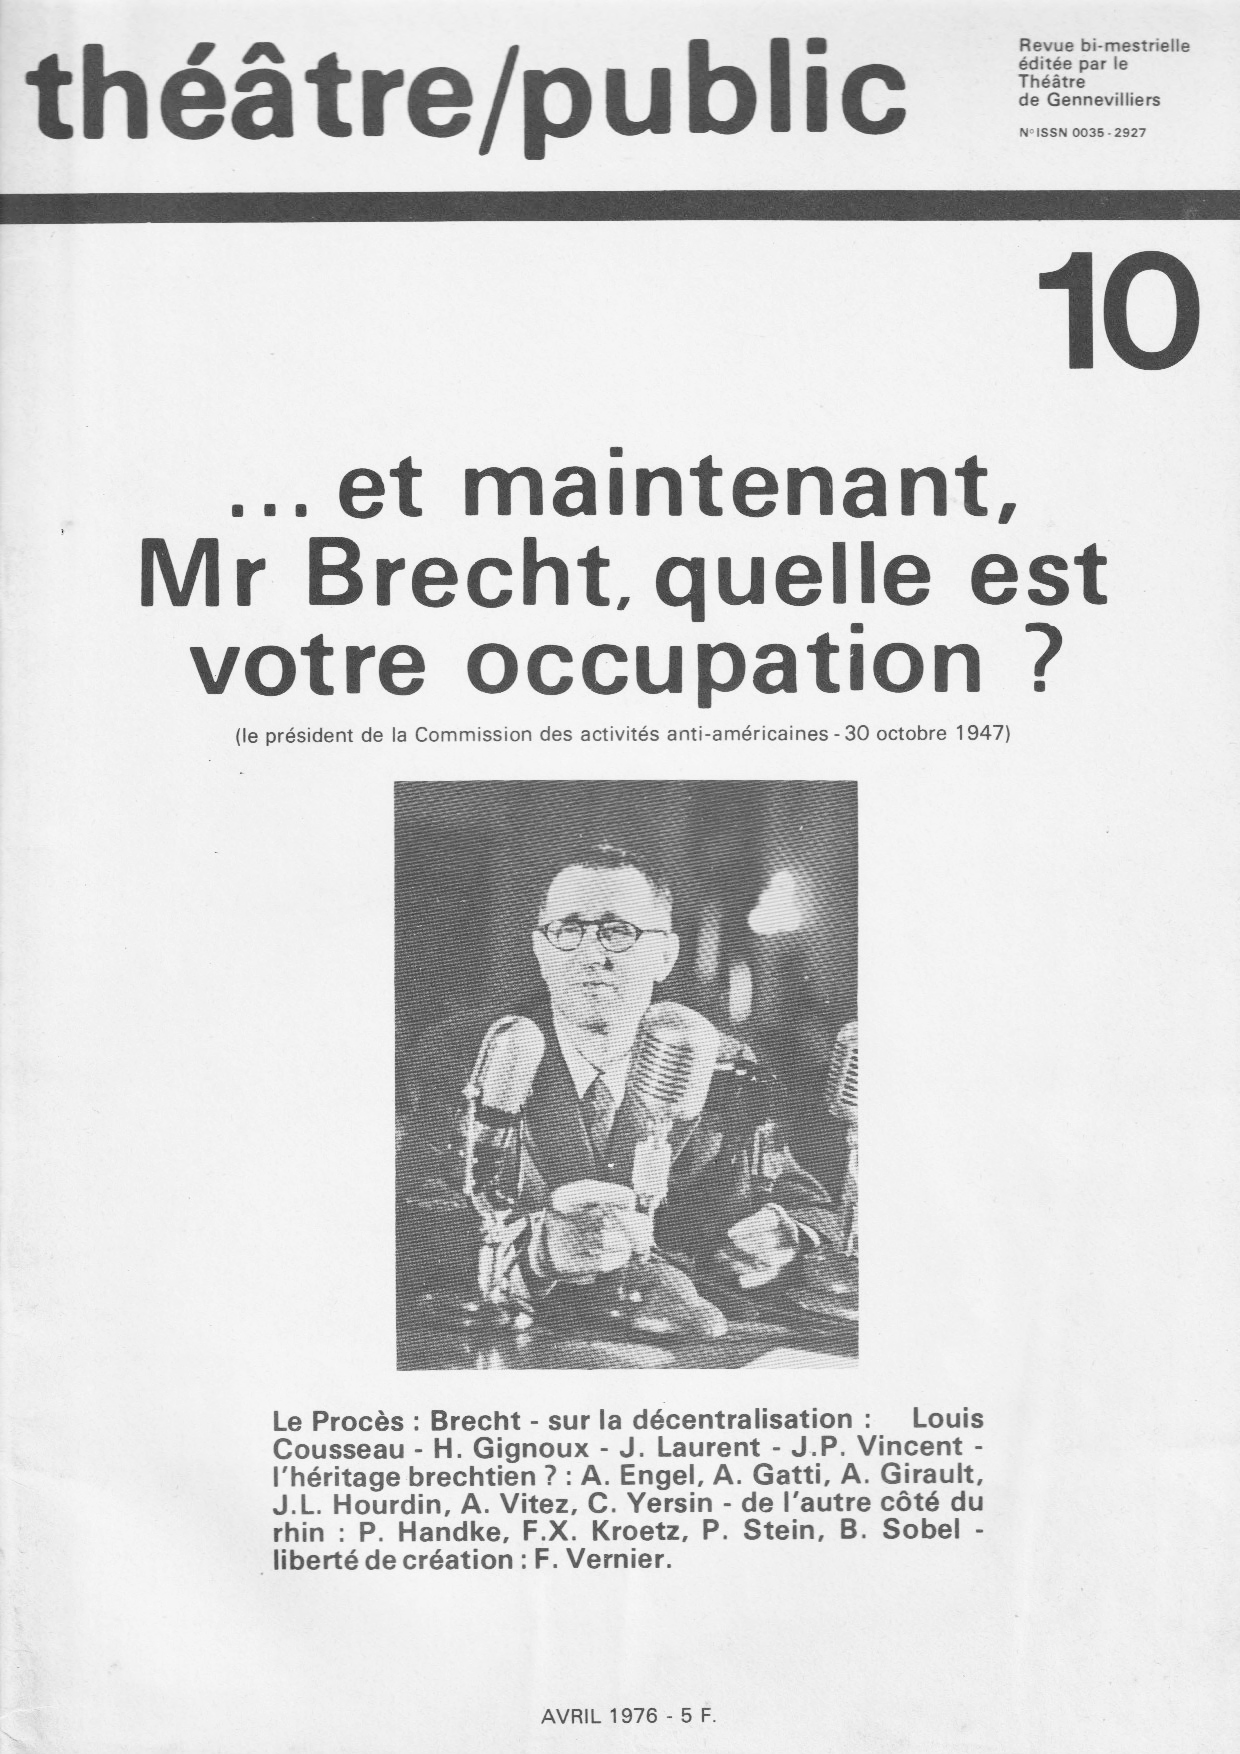 … et maintenant Mr Brecht, quelle est votre occupation ? | Numéro 10 | Théâtre/Public